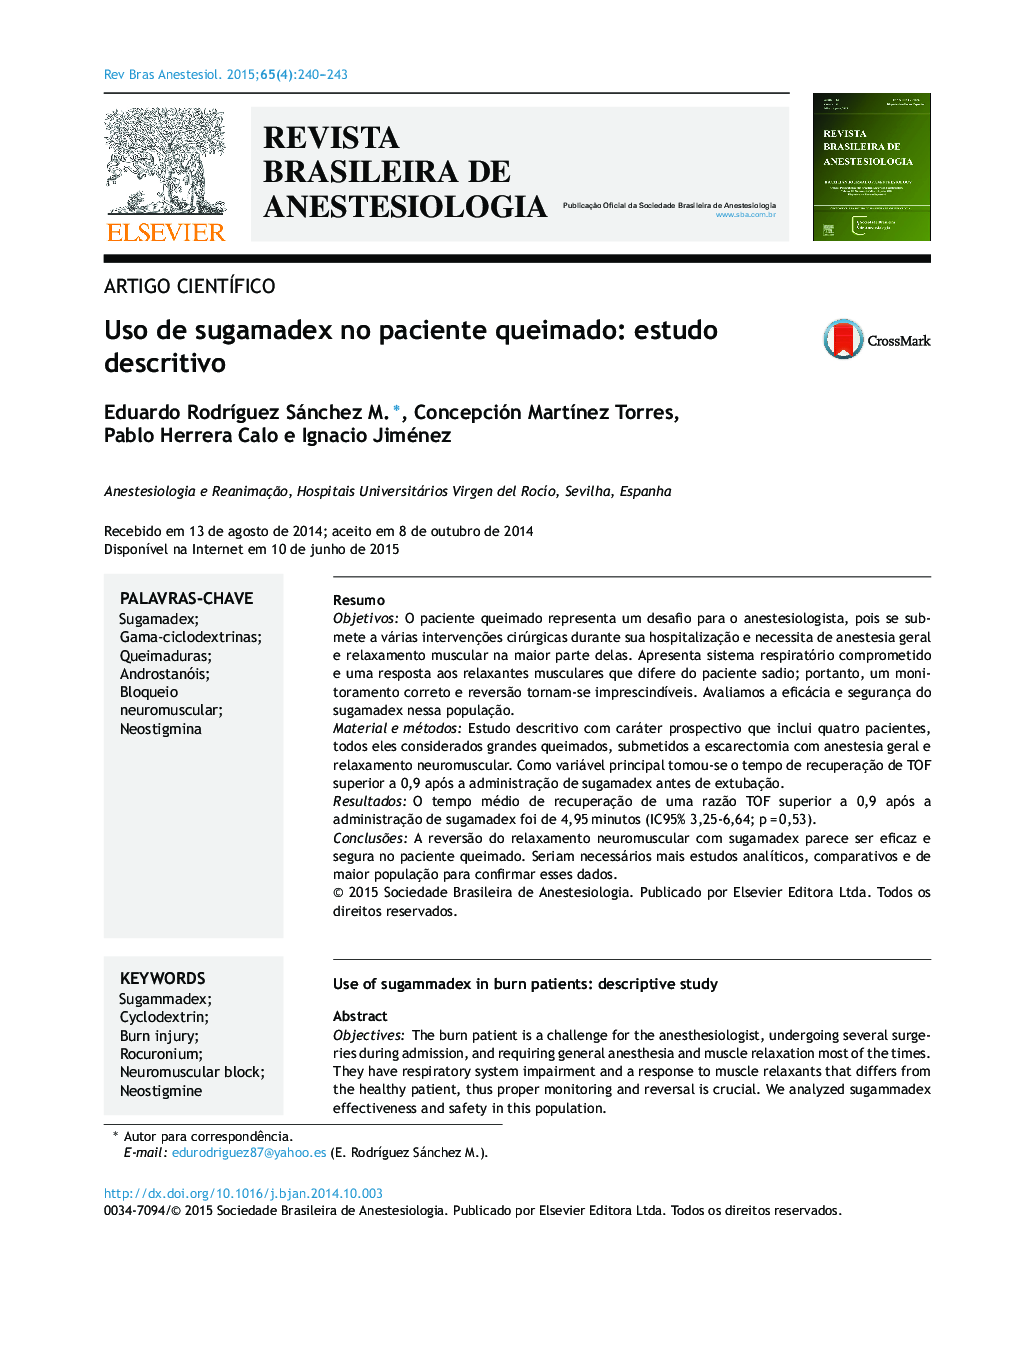 استفاده از سگامادهکس در بیمار سوختگی: یک مطالعه توصیفی است 